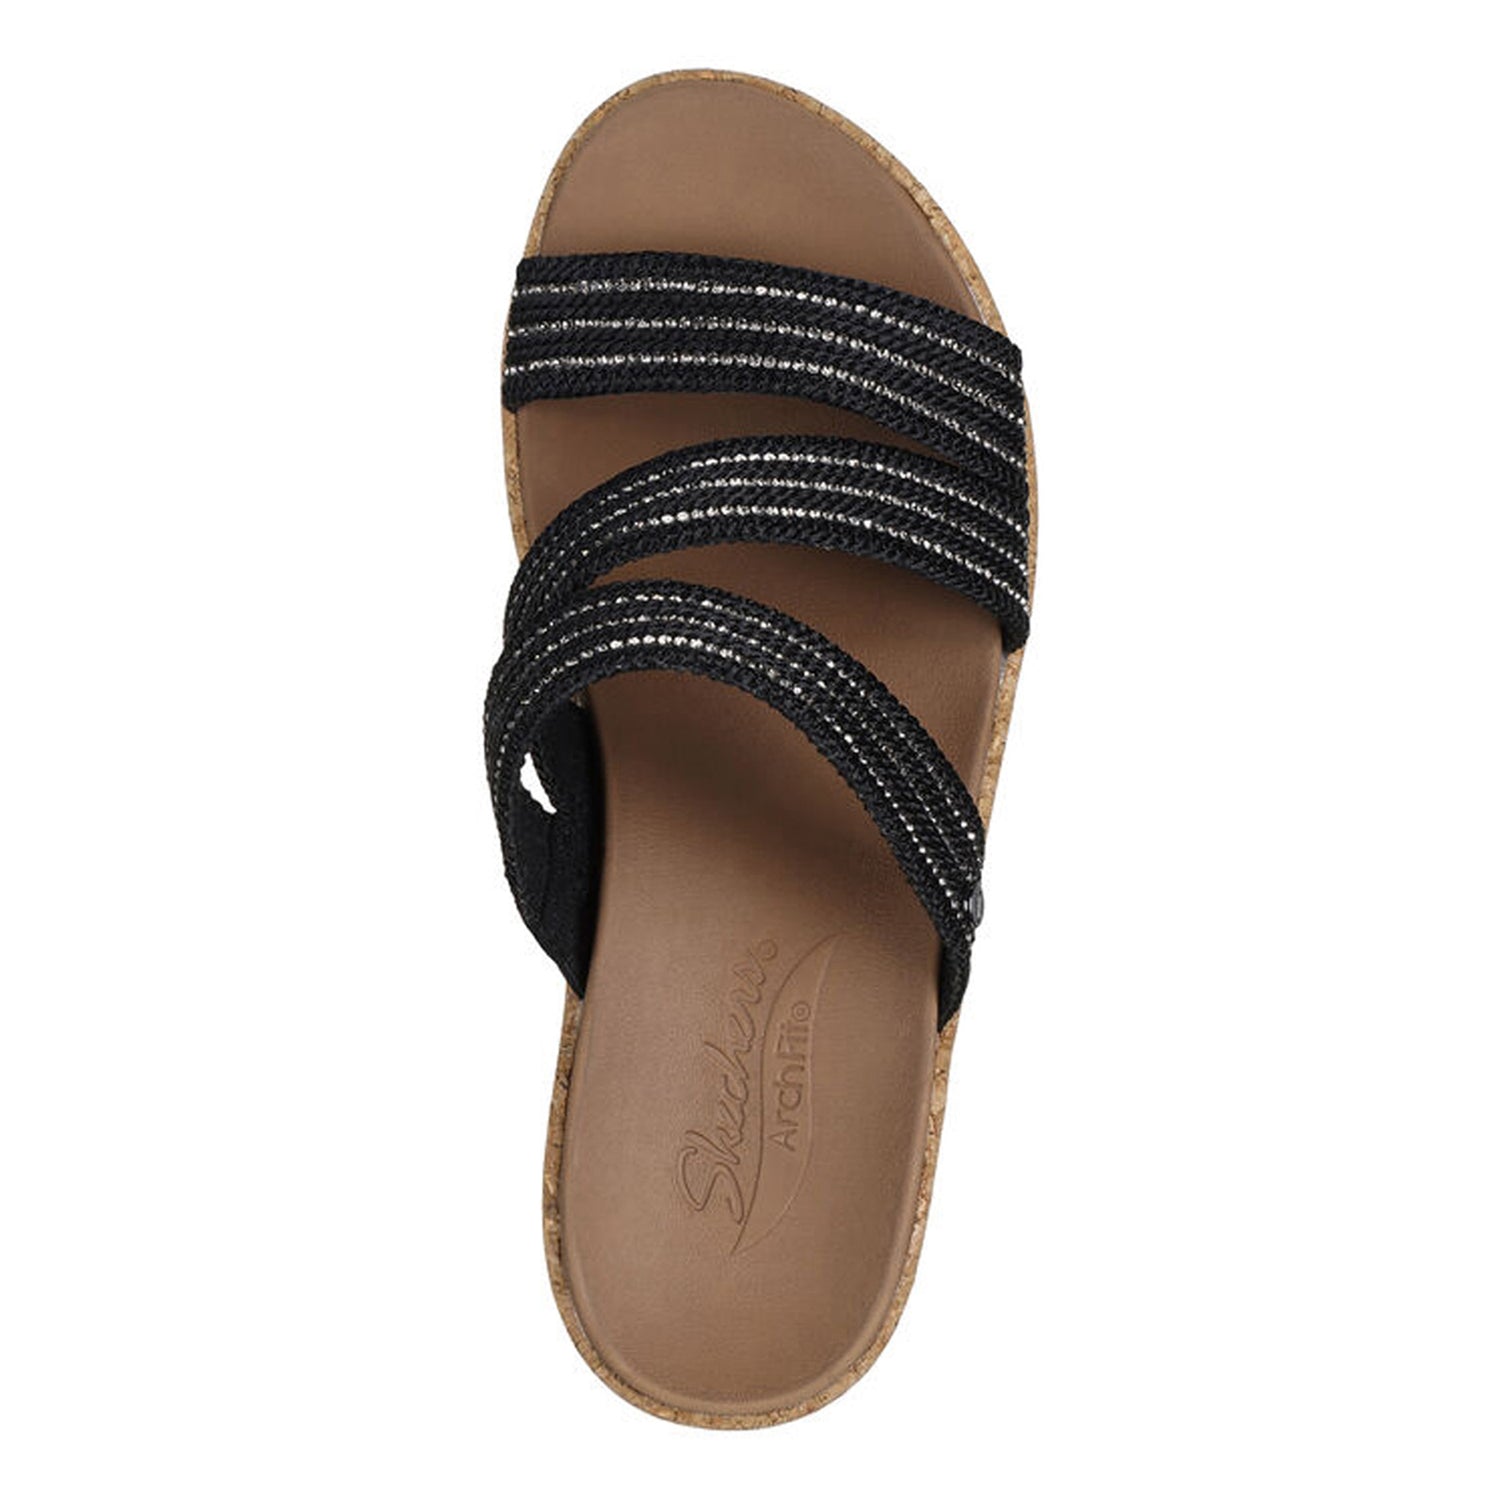 Peltz Shoes  Women's Skechers Arch Fit Beverlee - Always Classy Sandal Black 119548-BLK